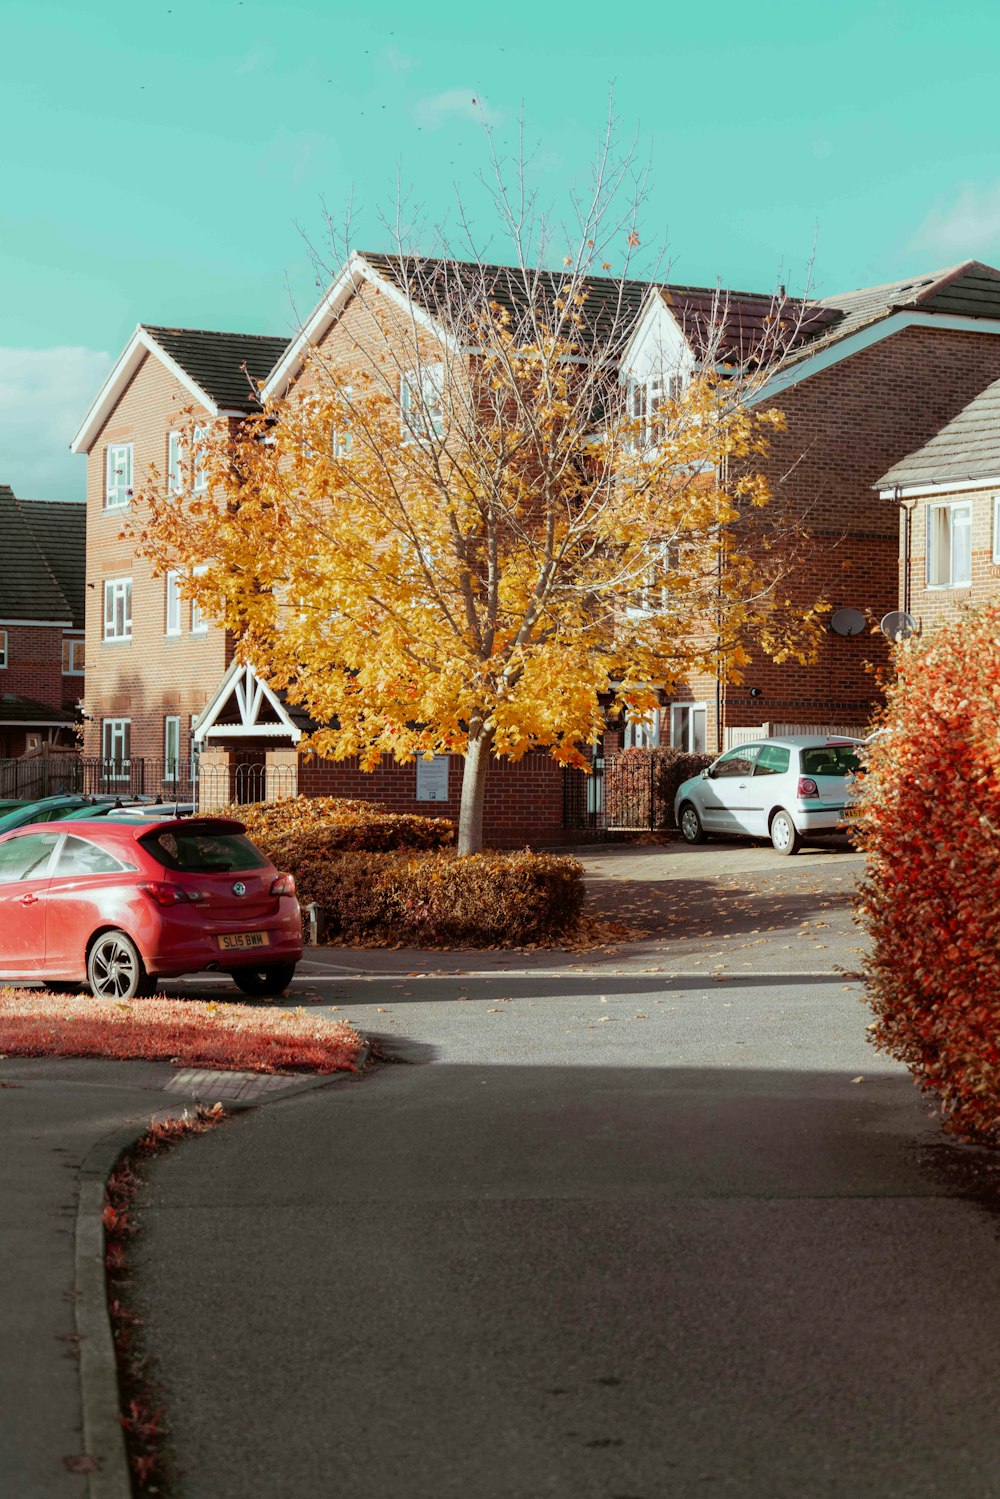 berlina rossa parcheggiata accanto all'albero marrone durante il giorno